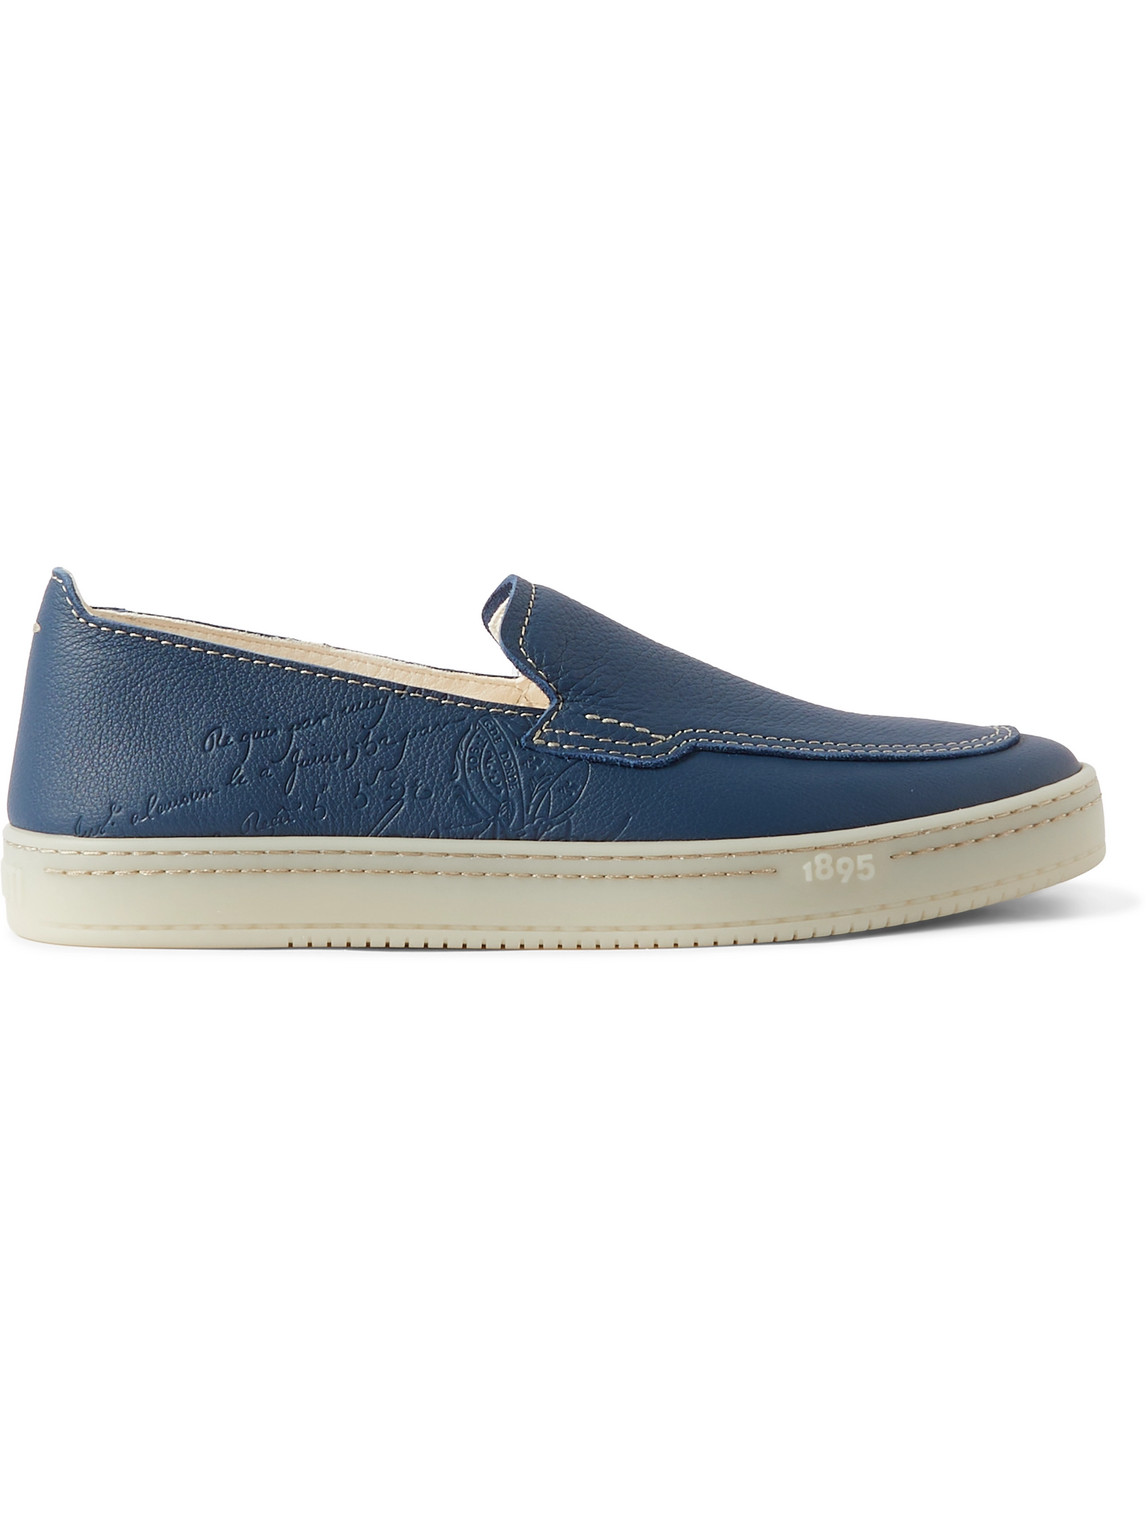 Berluti - Eden Scritto Full-Grain Leather Loafers - Men - Blue - UK 7 von Berluti